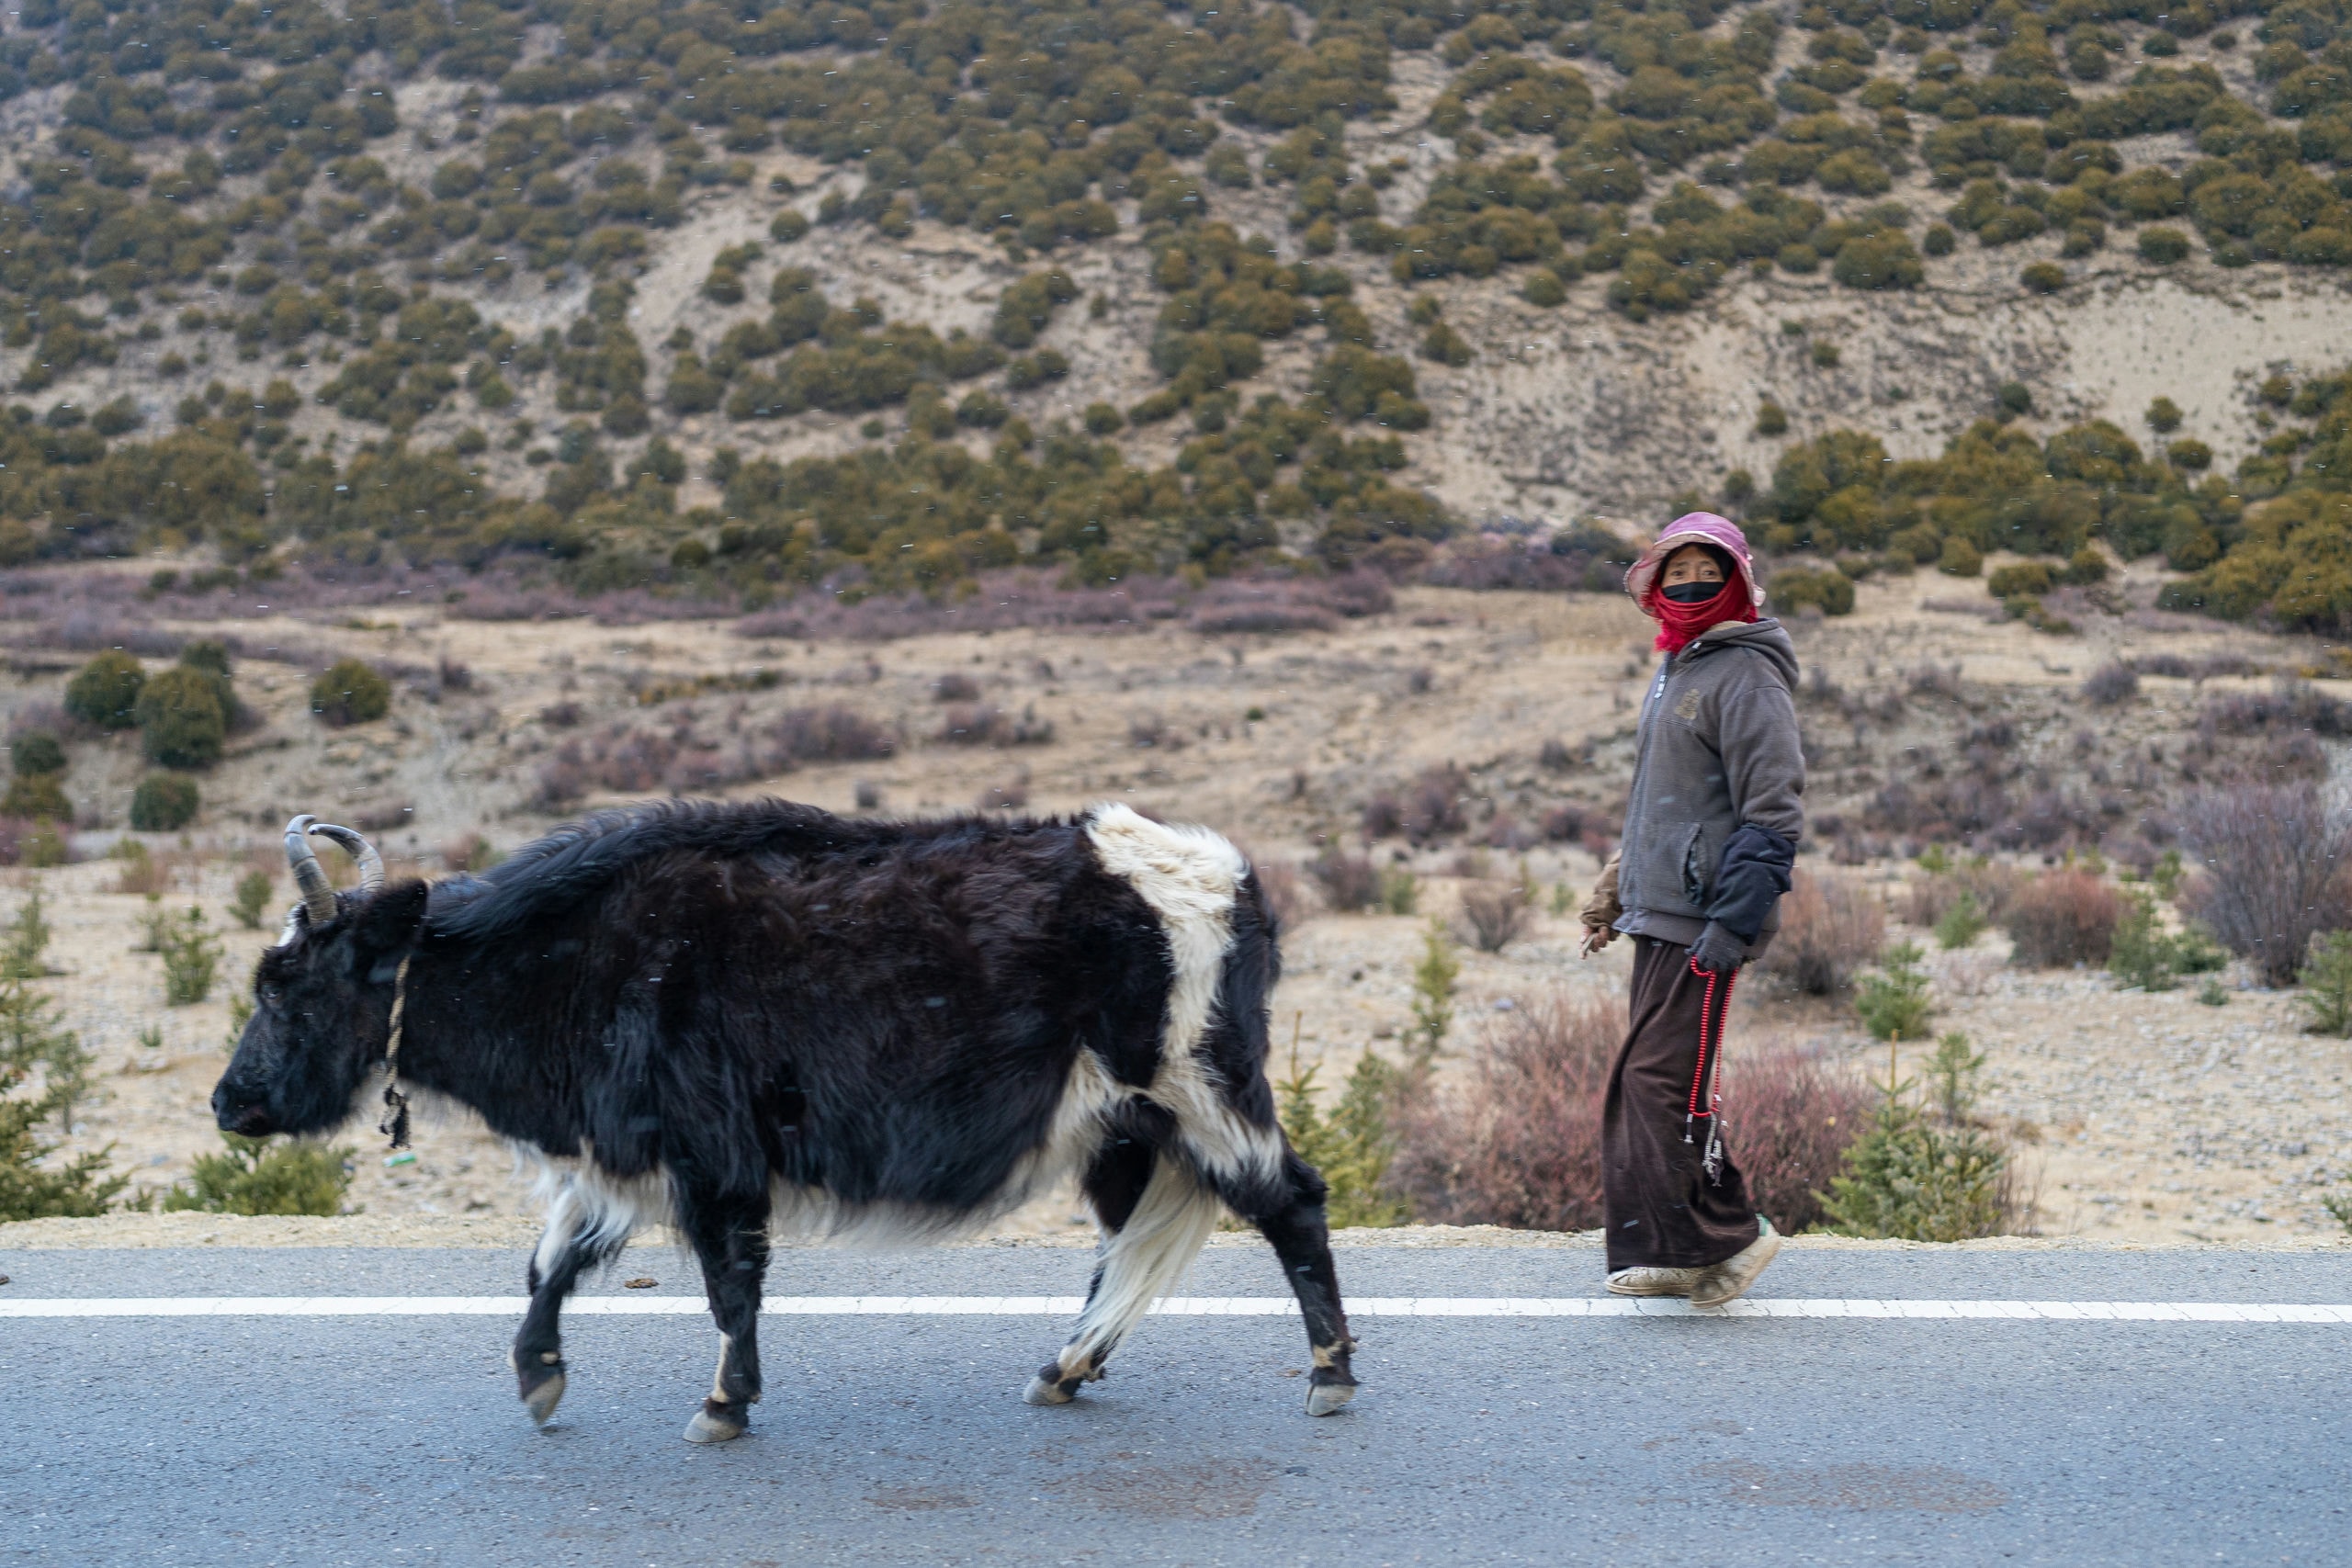 四川·甘孜藏族自治州自驾游